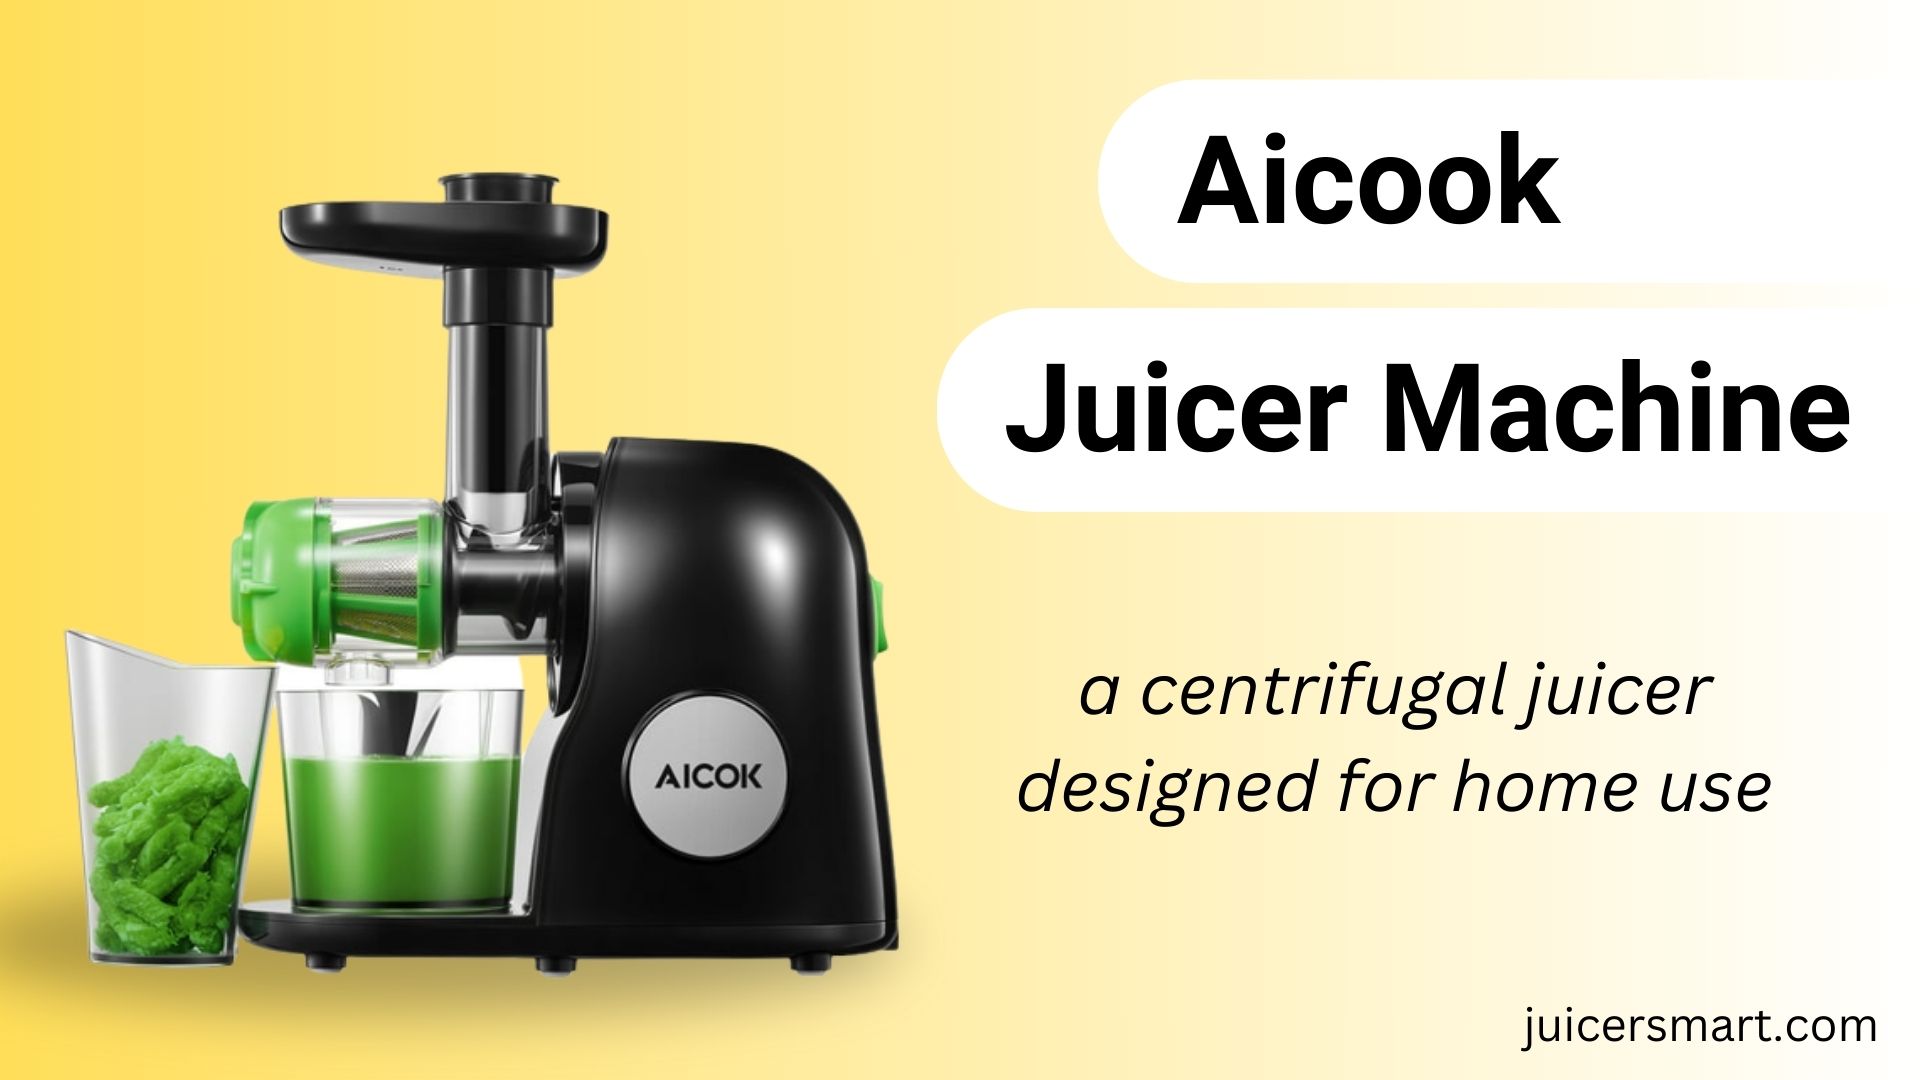 Aicook Juicer Machine